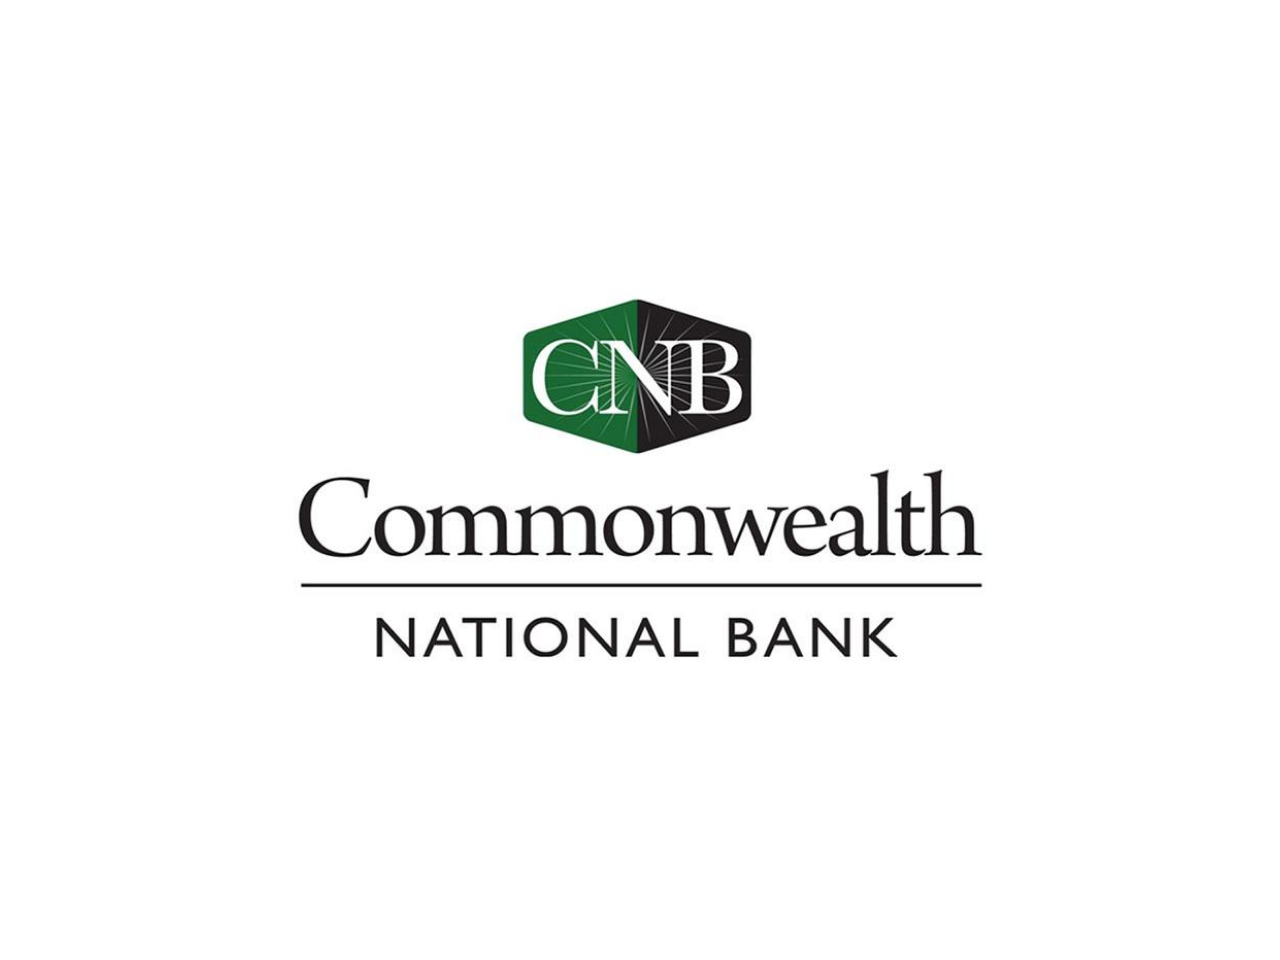 Commonwealth National Bank